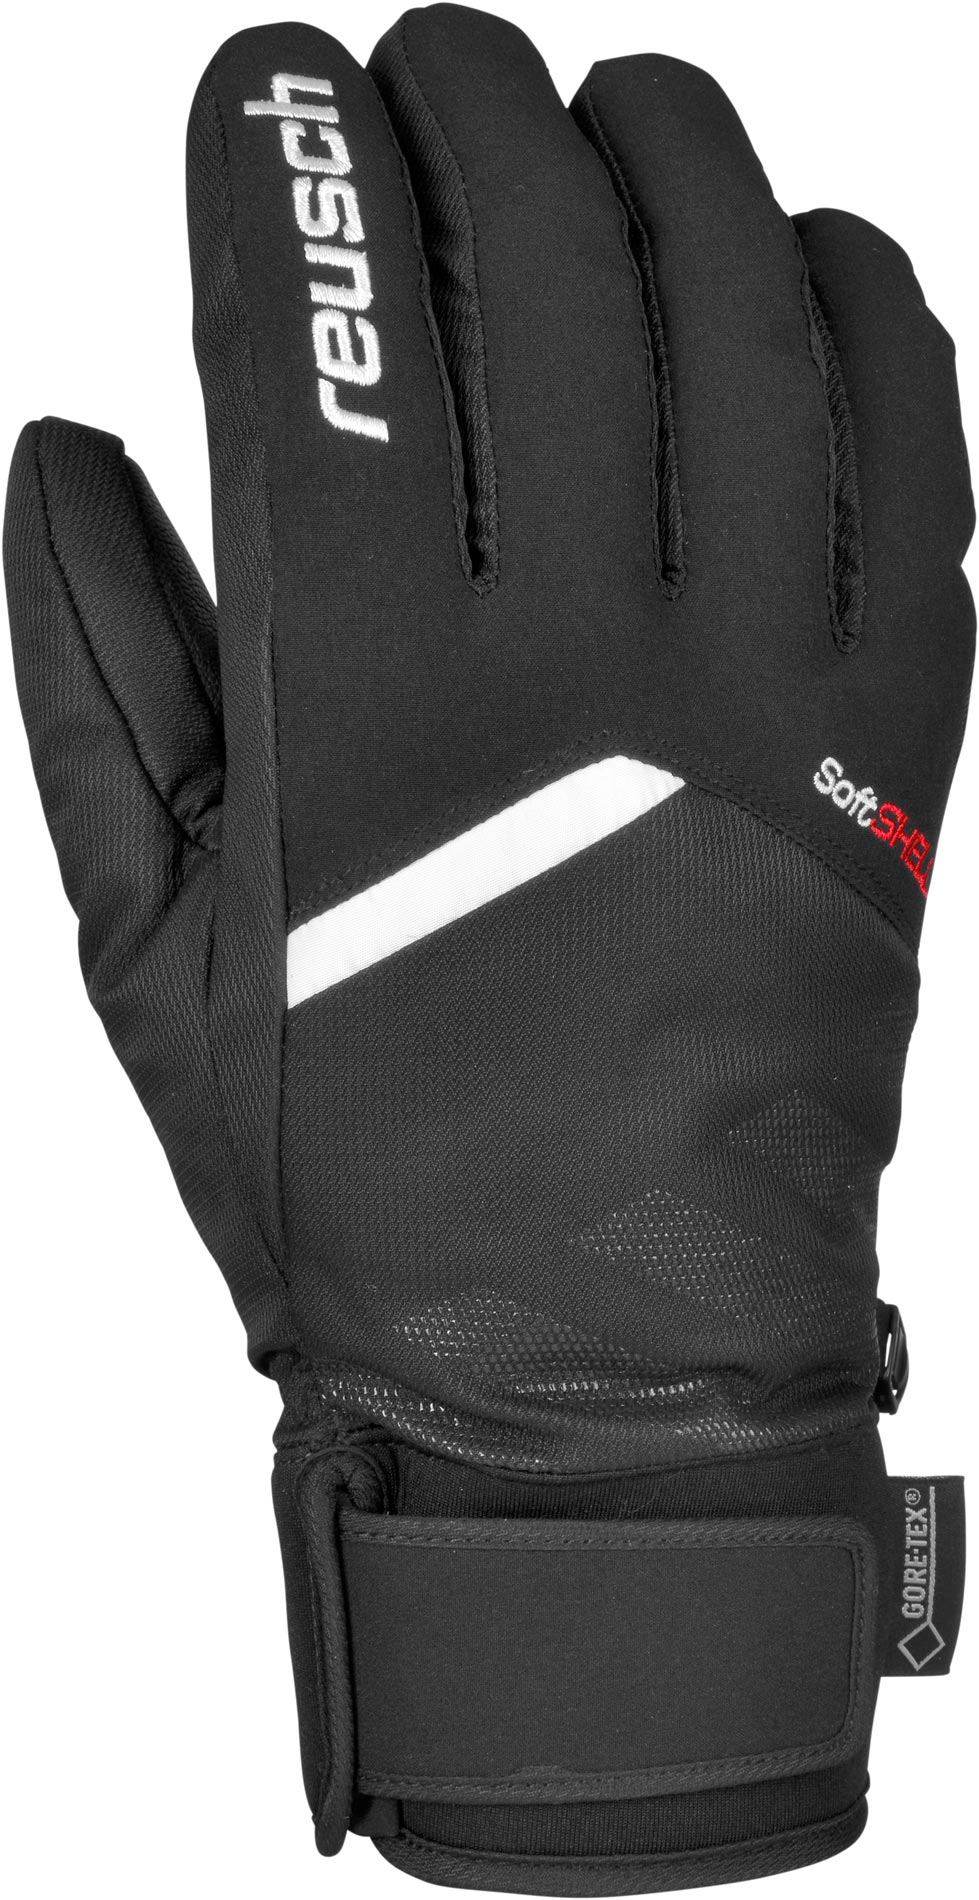 Unisex winter gloves